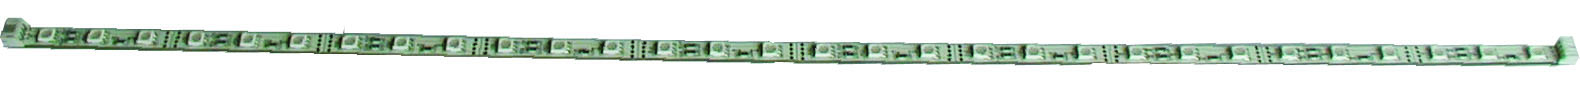 LED Strip Streifen LED Band starr 12V 7,2W 30 SMD LED's 57,4 cm